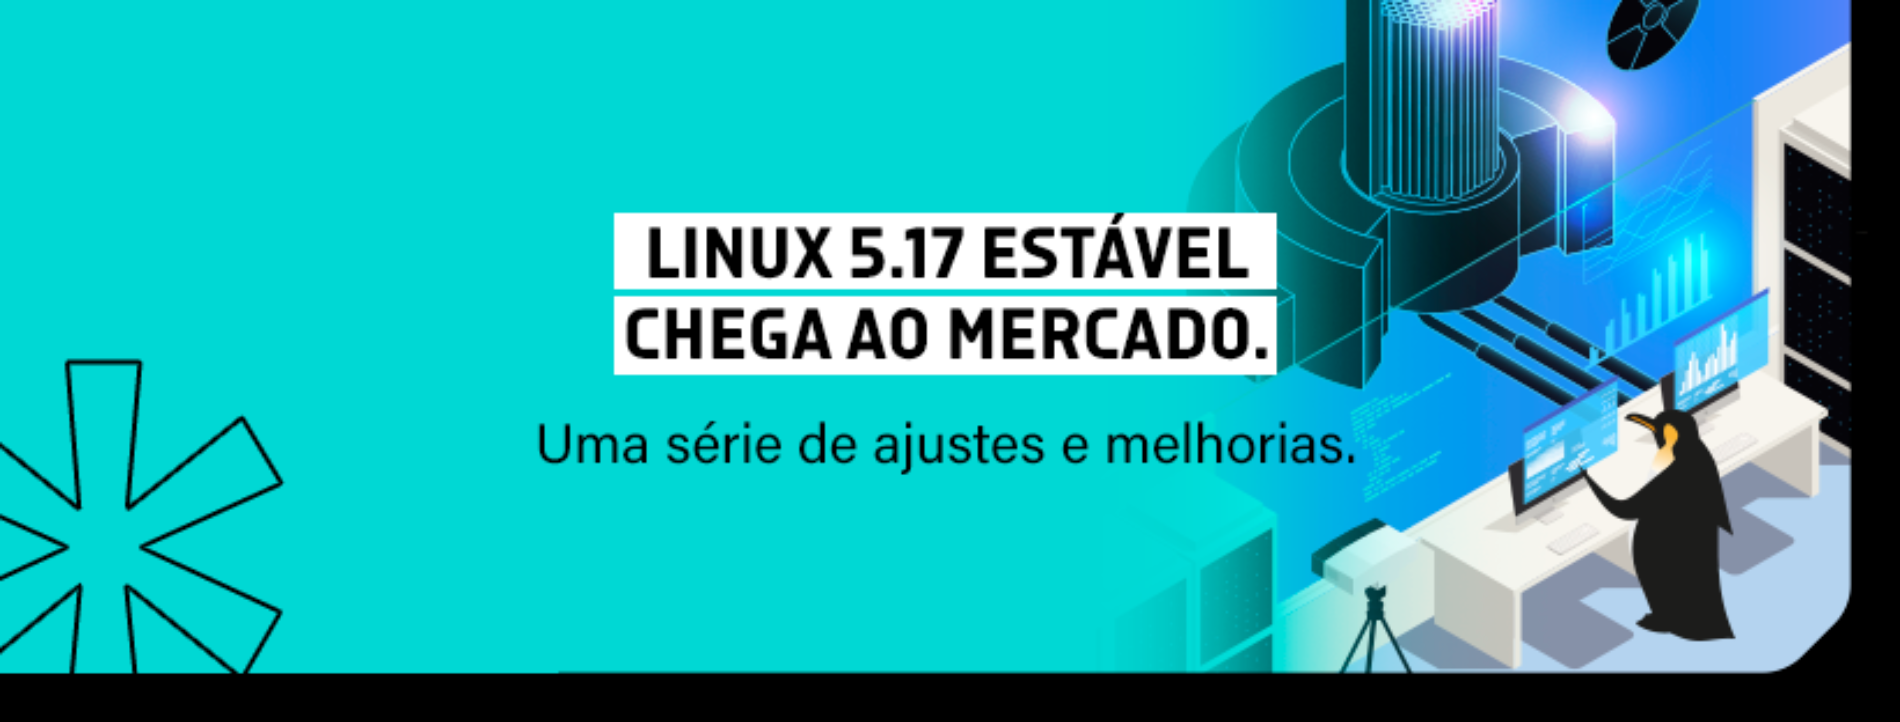 Linux 5.17 estável chega ao mercado.